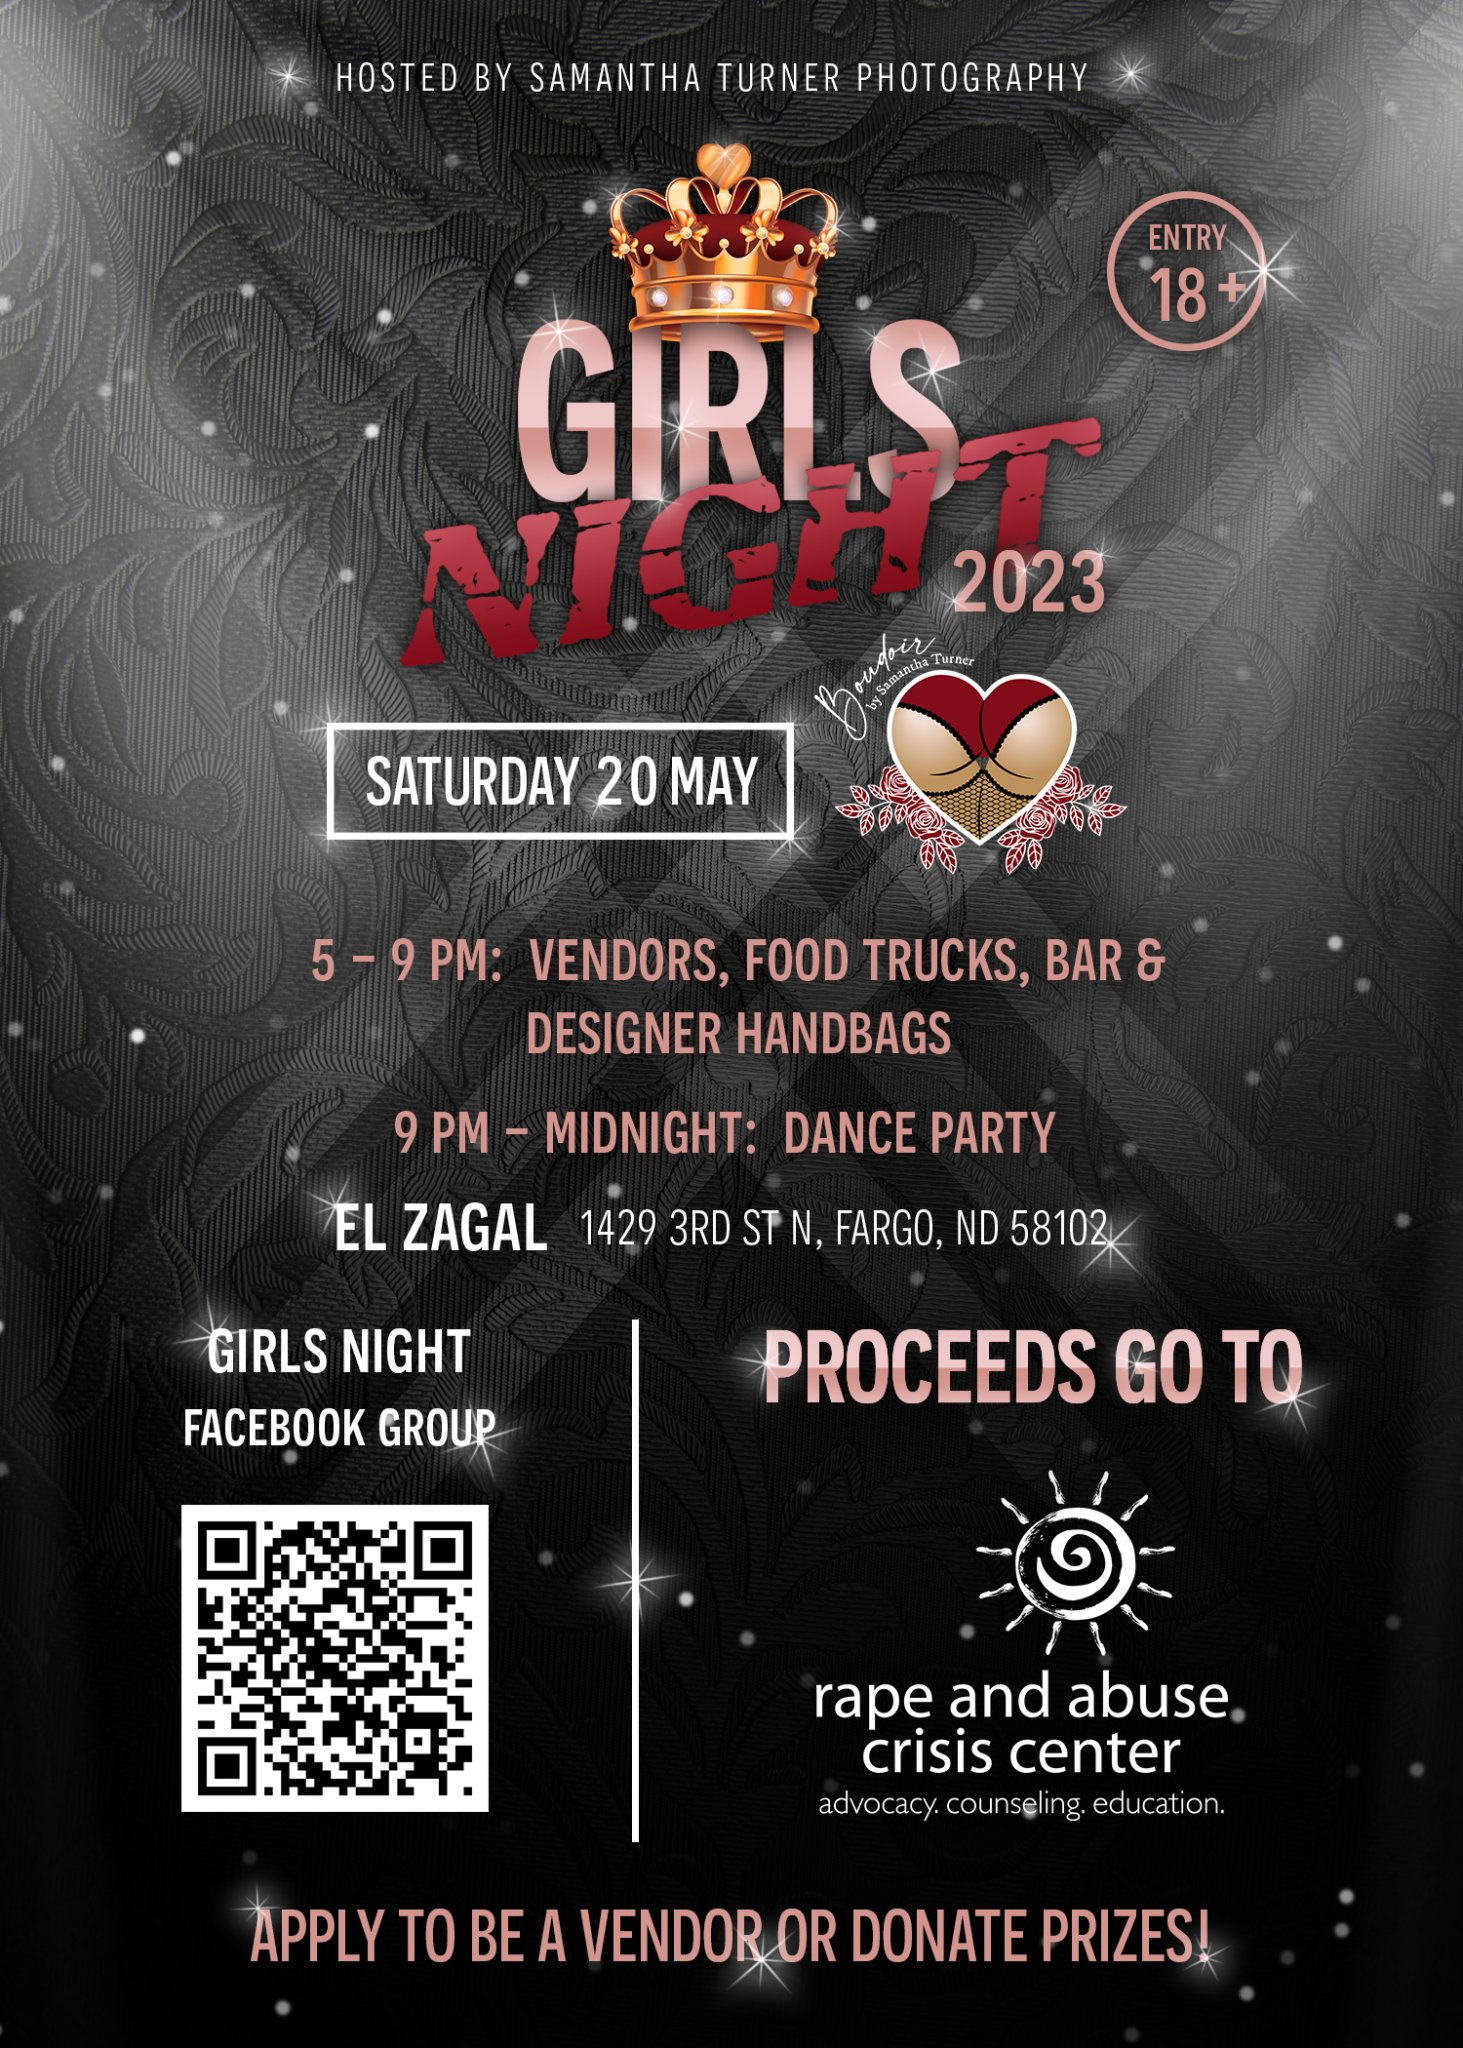 Girls Night presented by STP